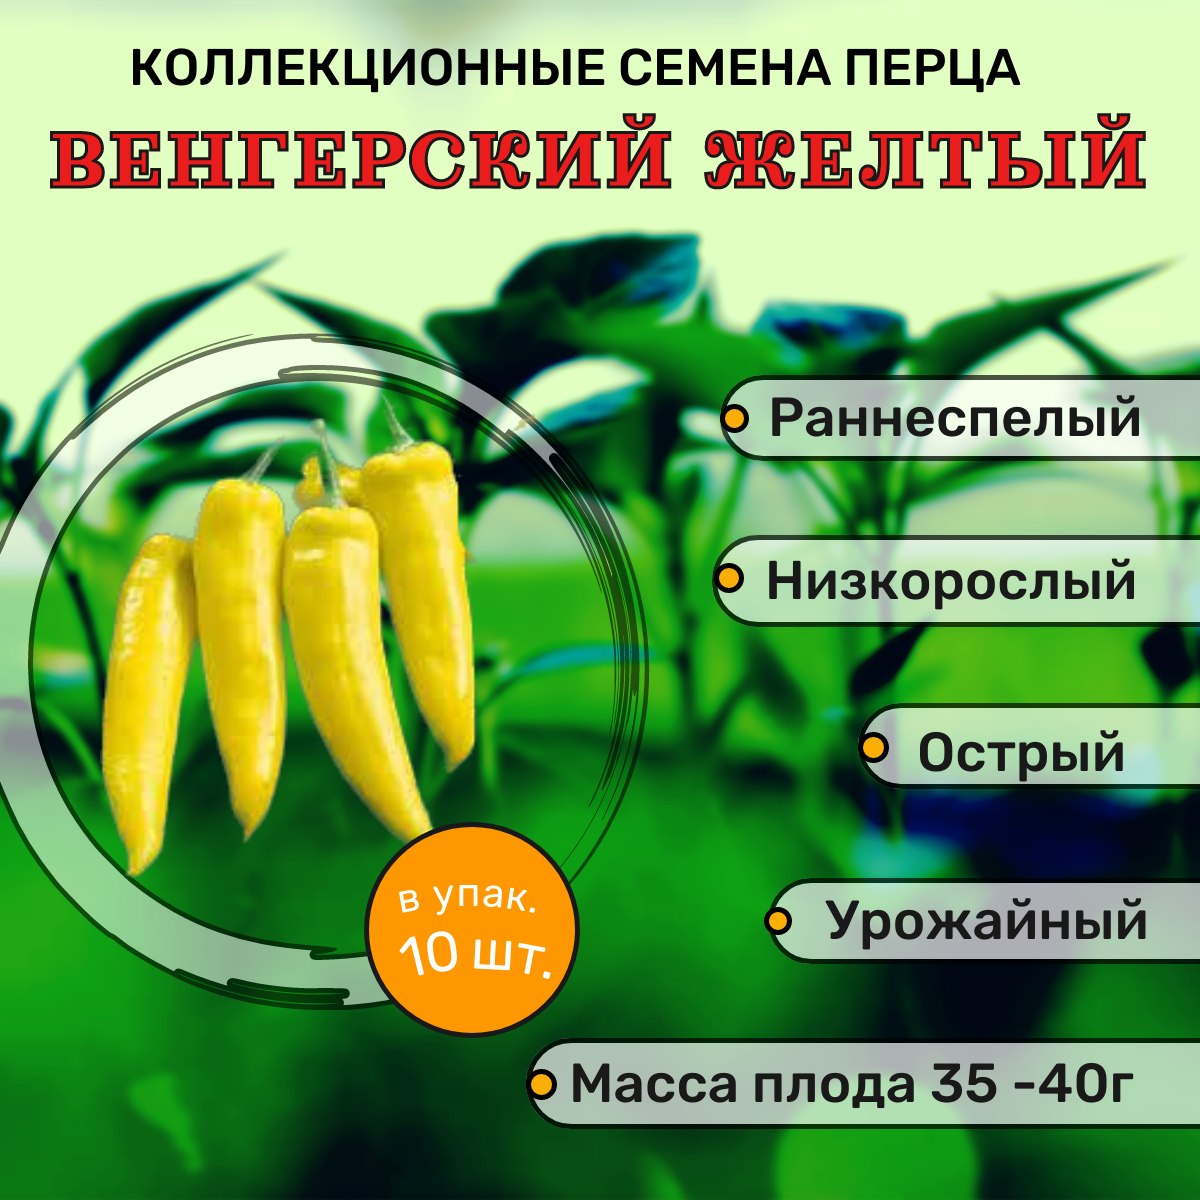 Коллекционные семена перца острого Венгерский желтый